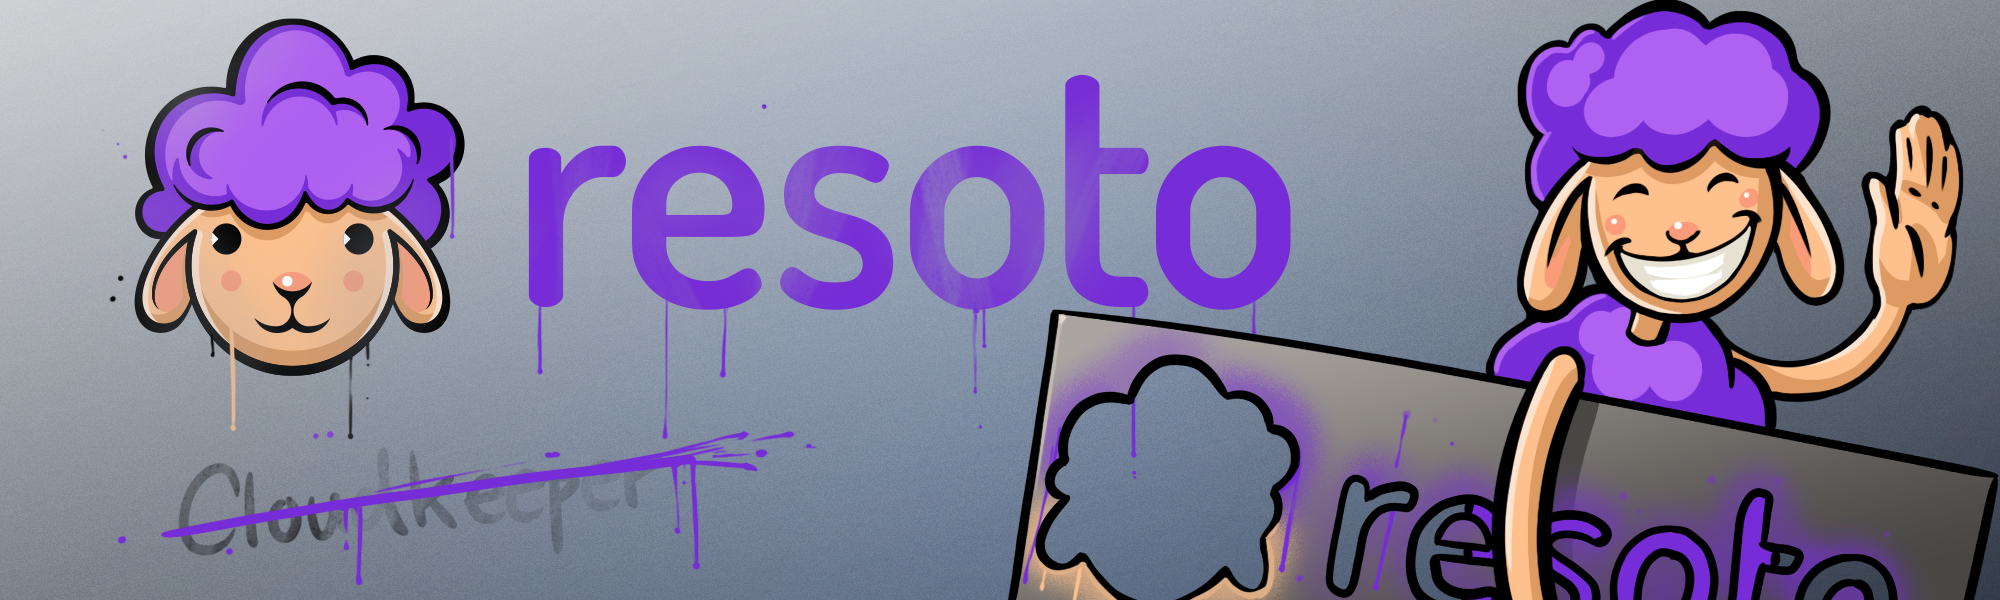 Resoto Logo Graffiti